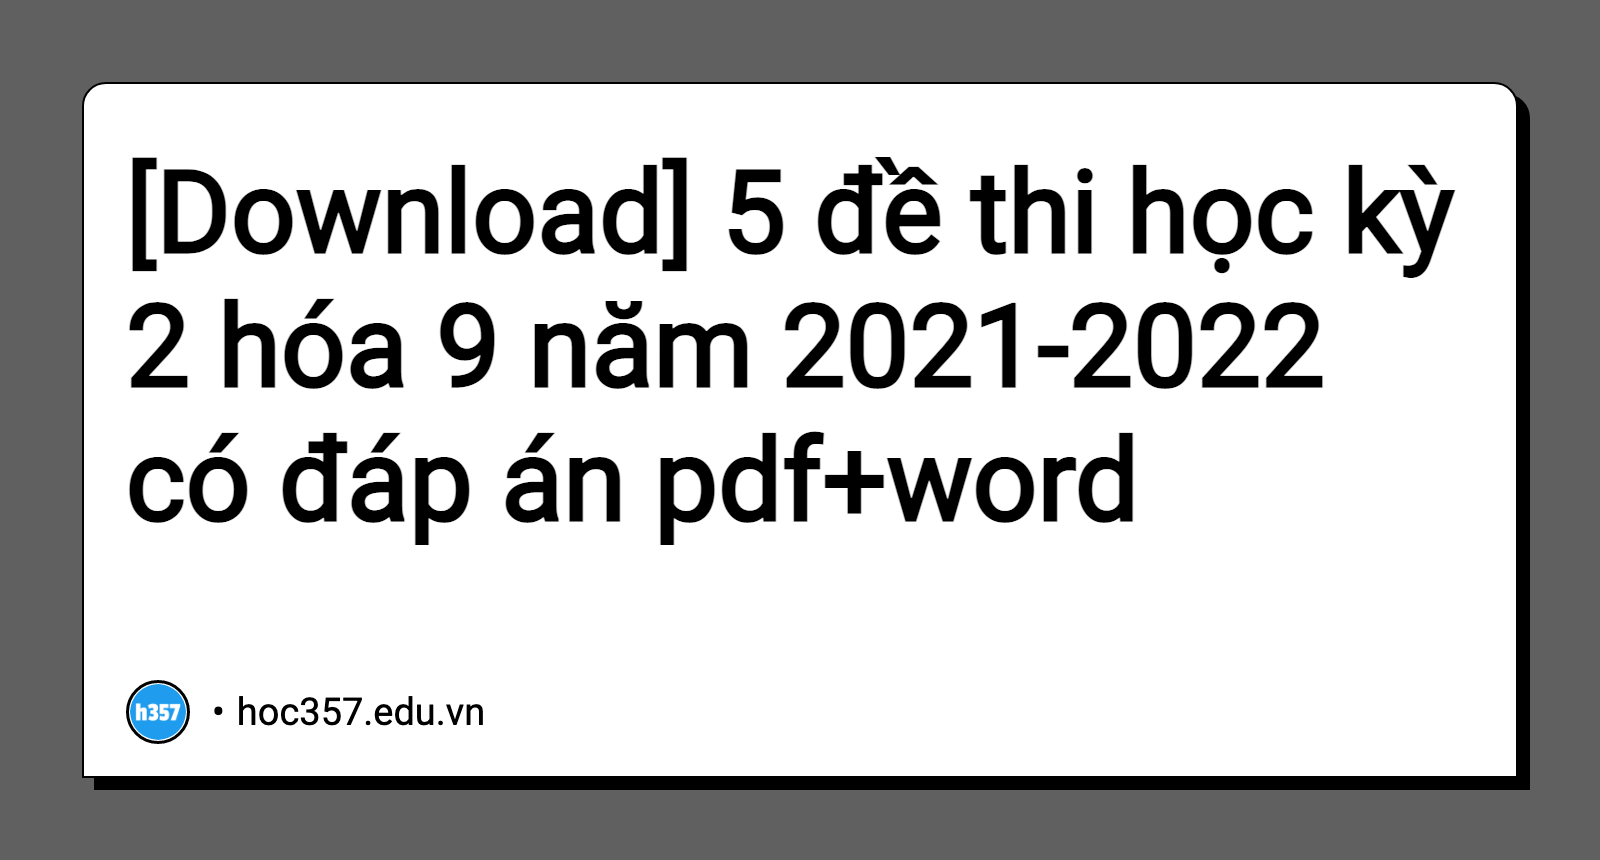 Hình minh họa 5 đề thi học kỳ 2 hóa 9 năm 2021-2022 có đáp án